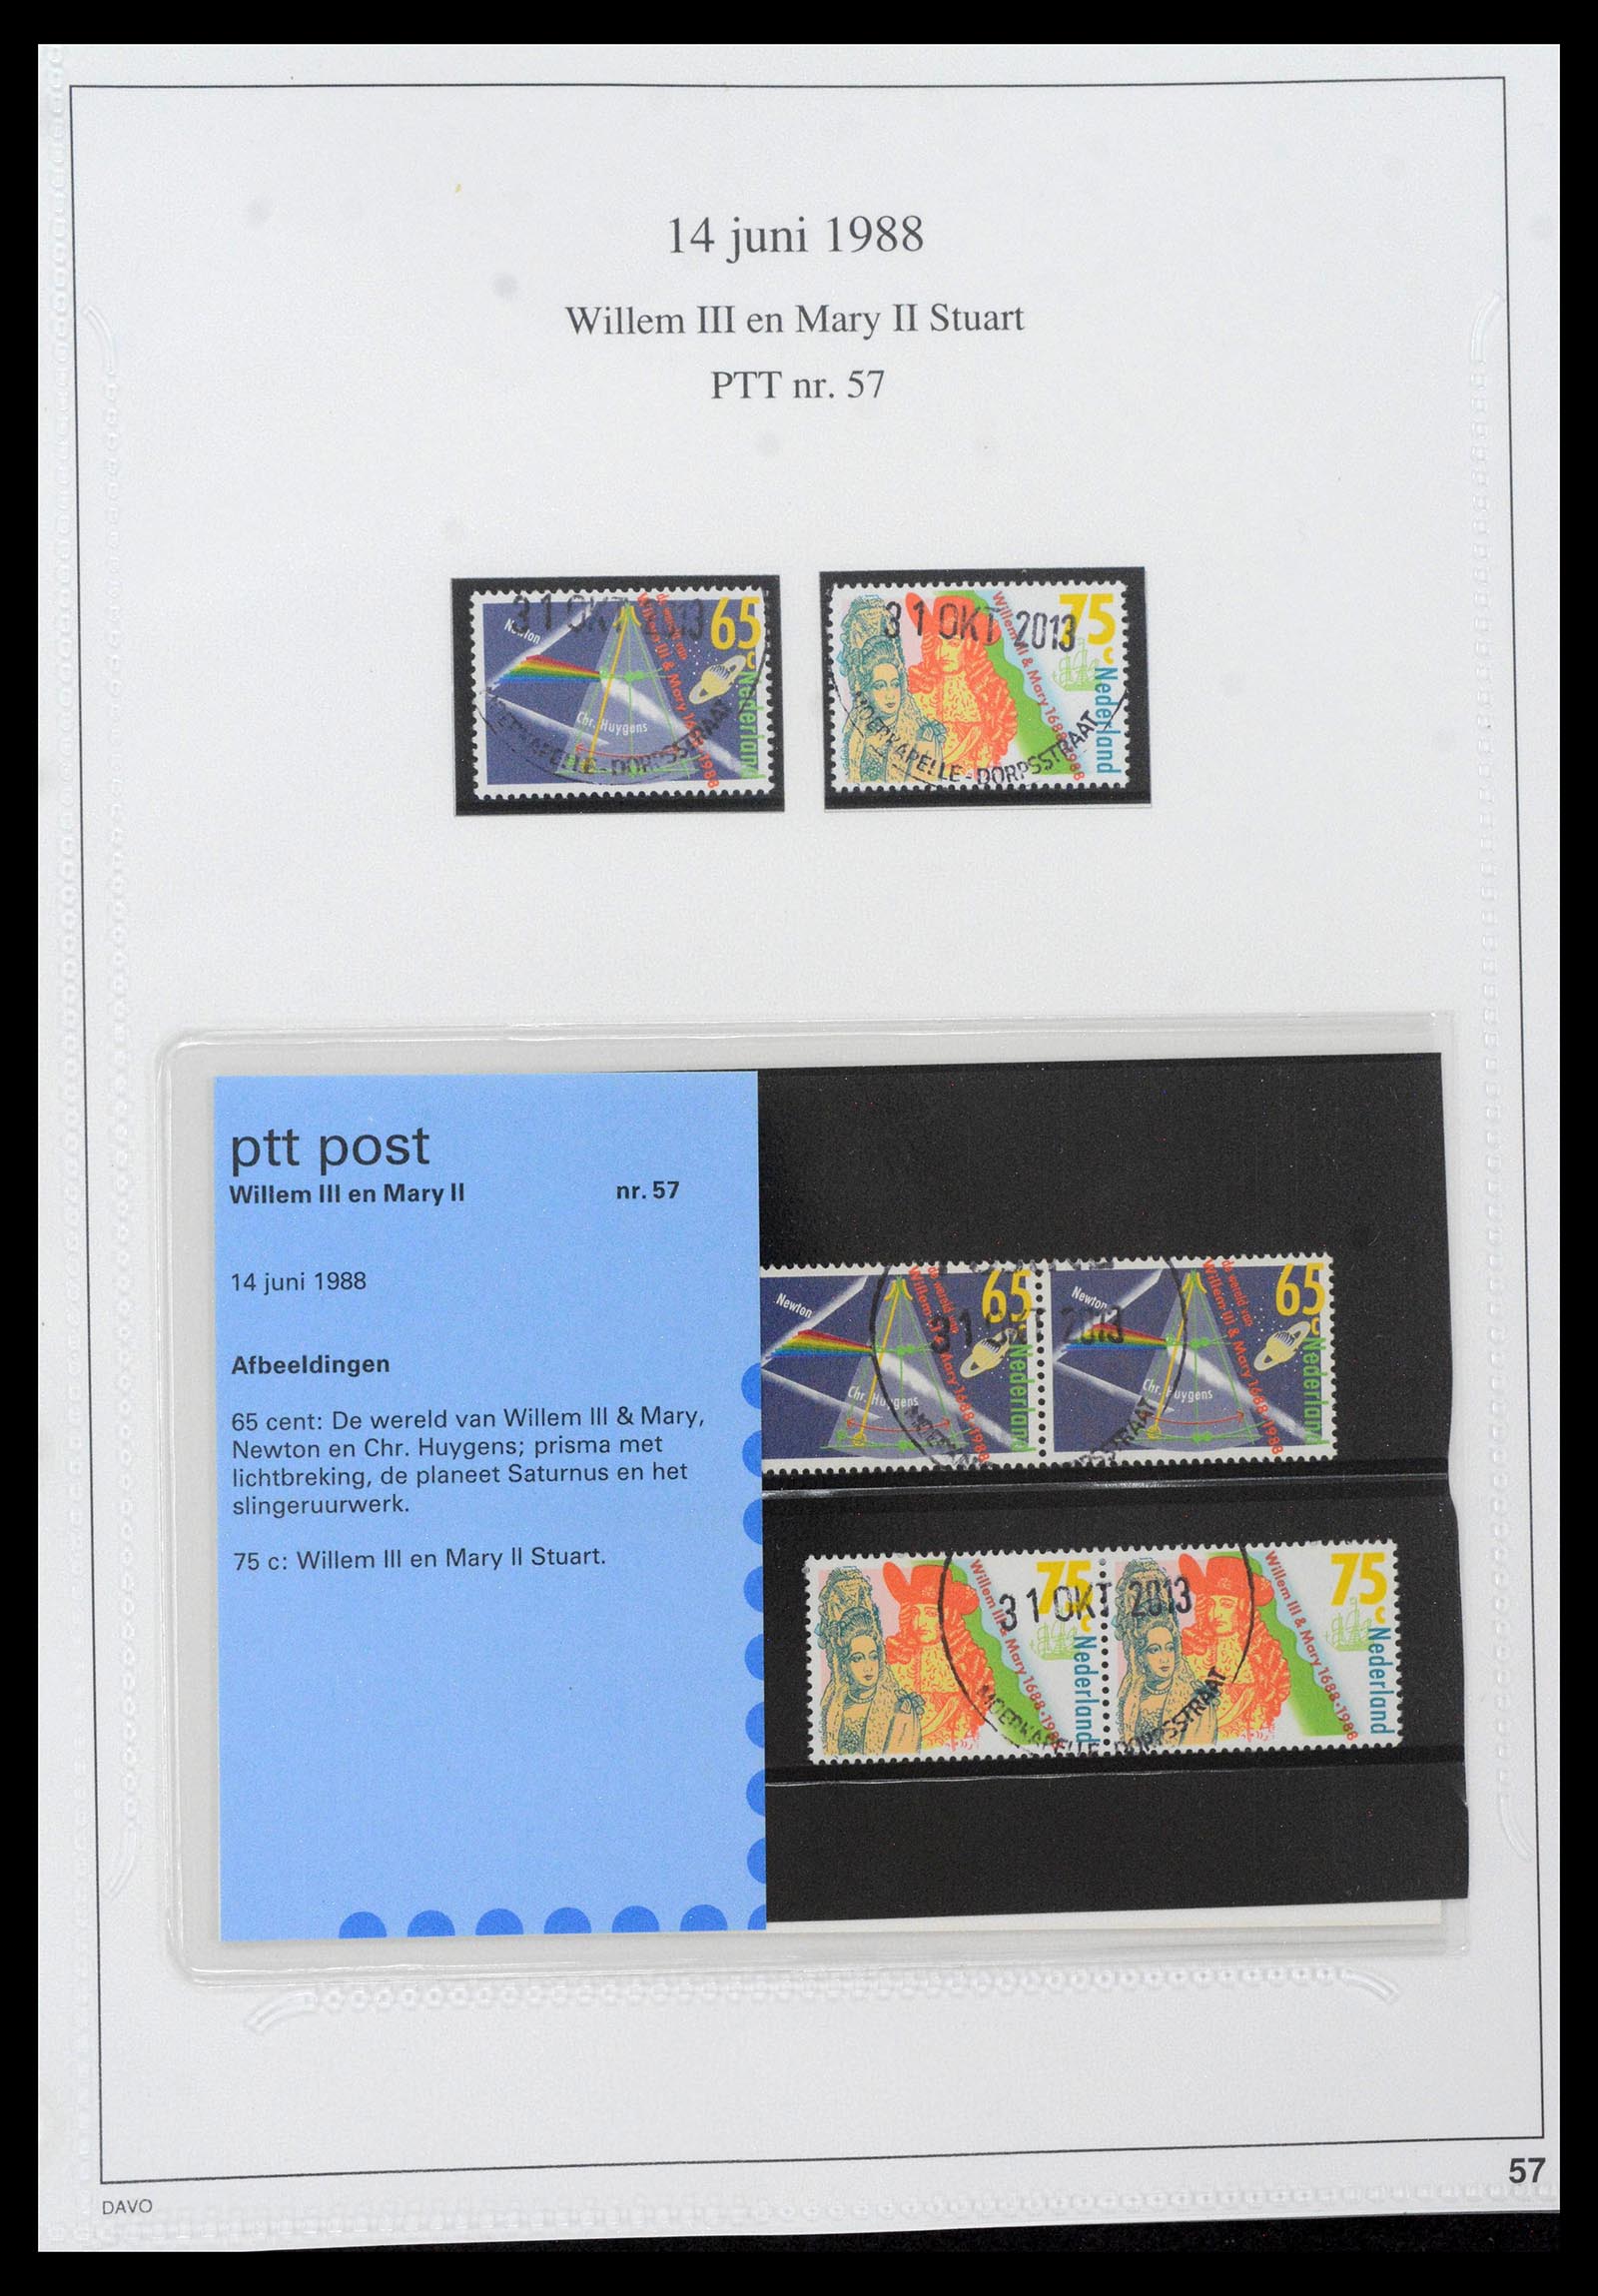 39121 0057 - Stamp collection 39121 Netherlands presentationpacks 1982-2001.